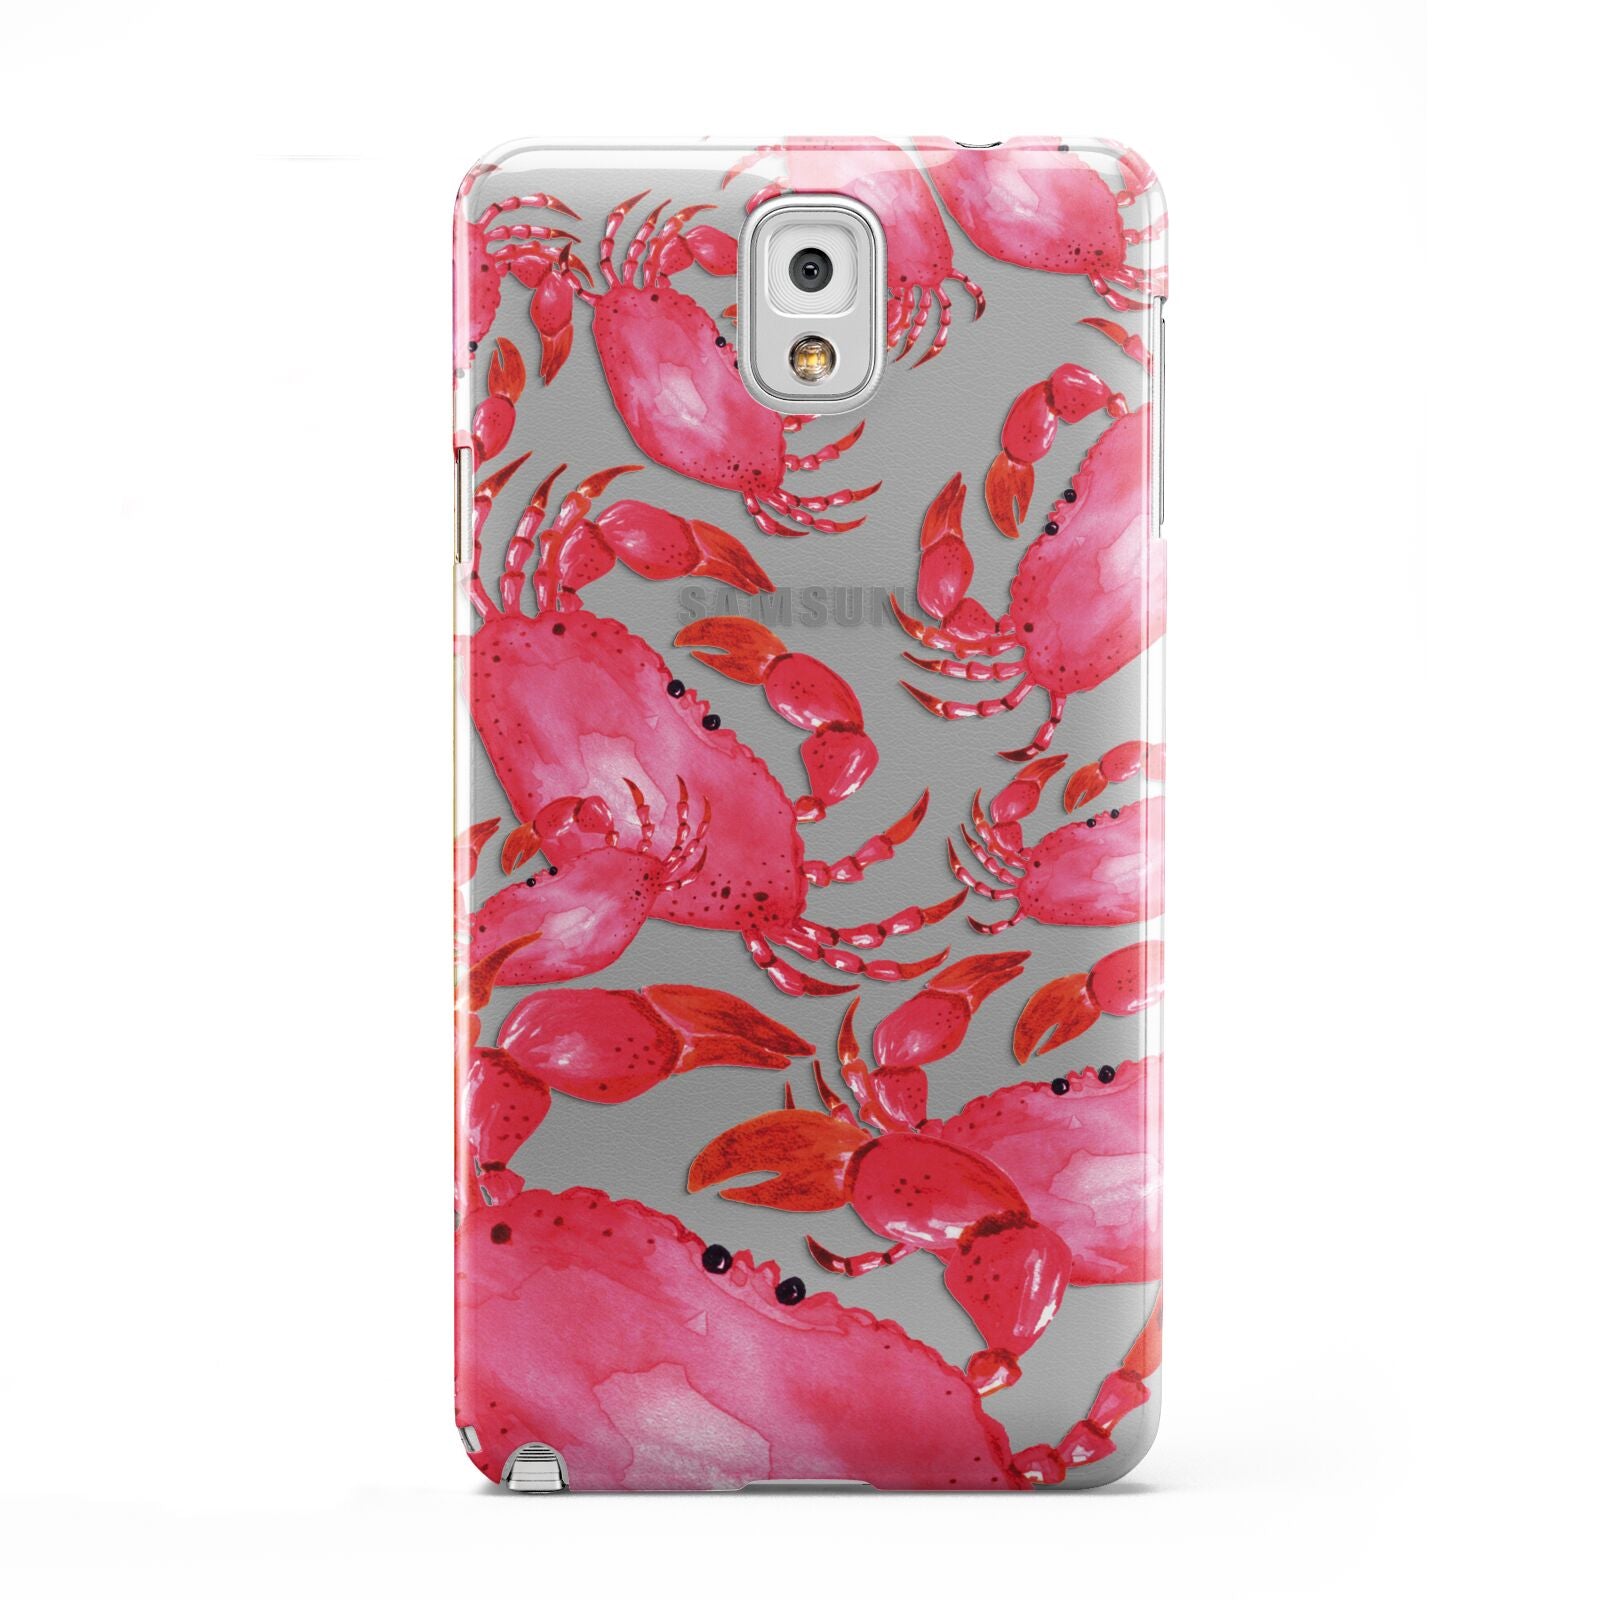 Crab Samsung Galaxy Note 3 Case